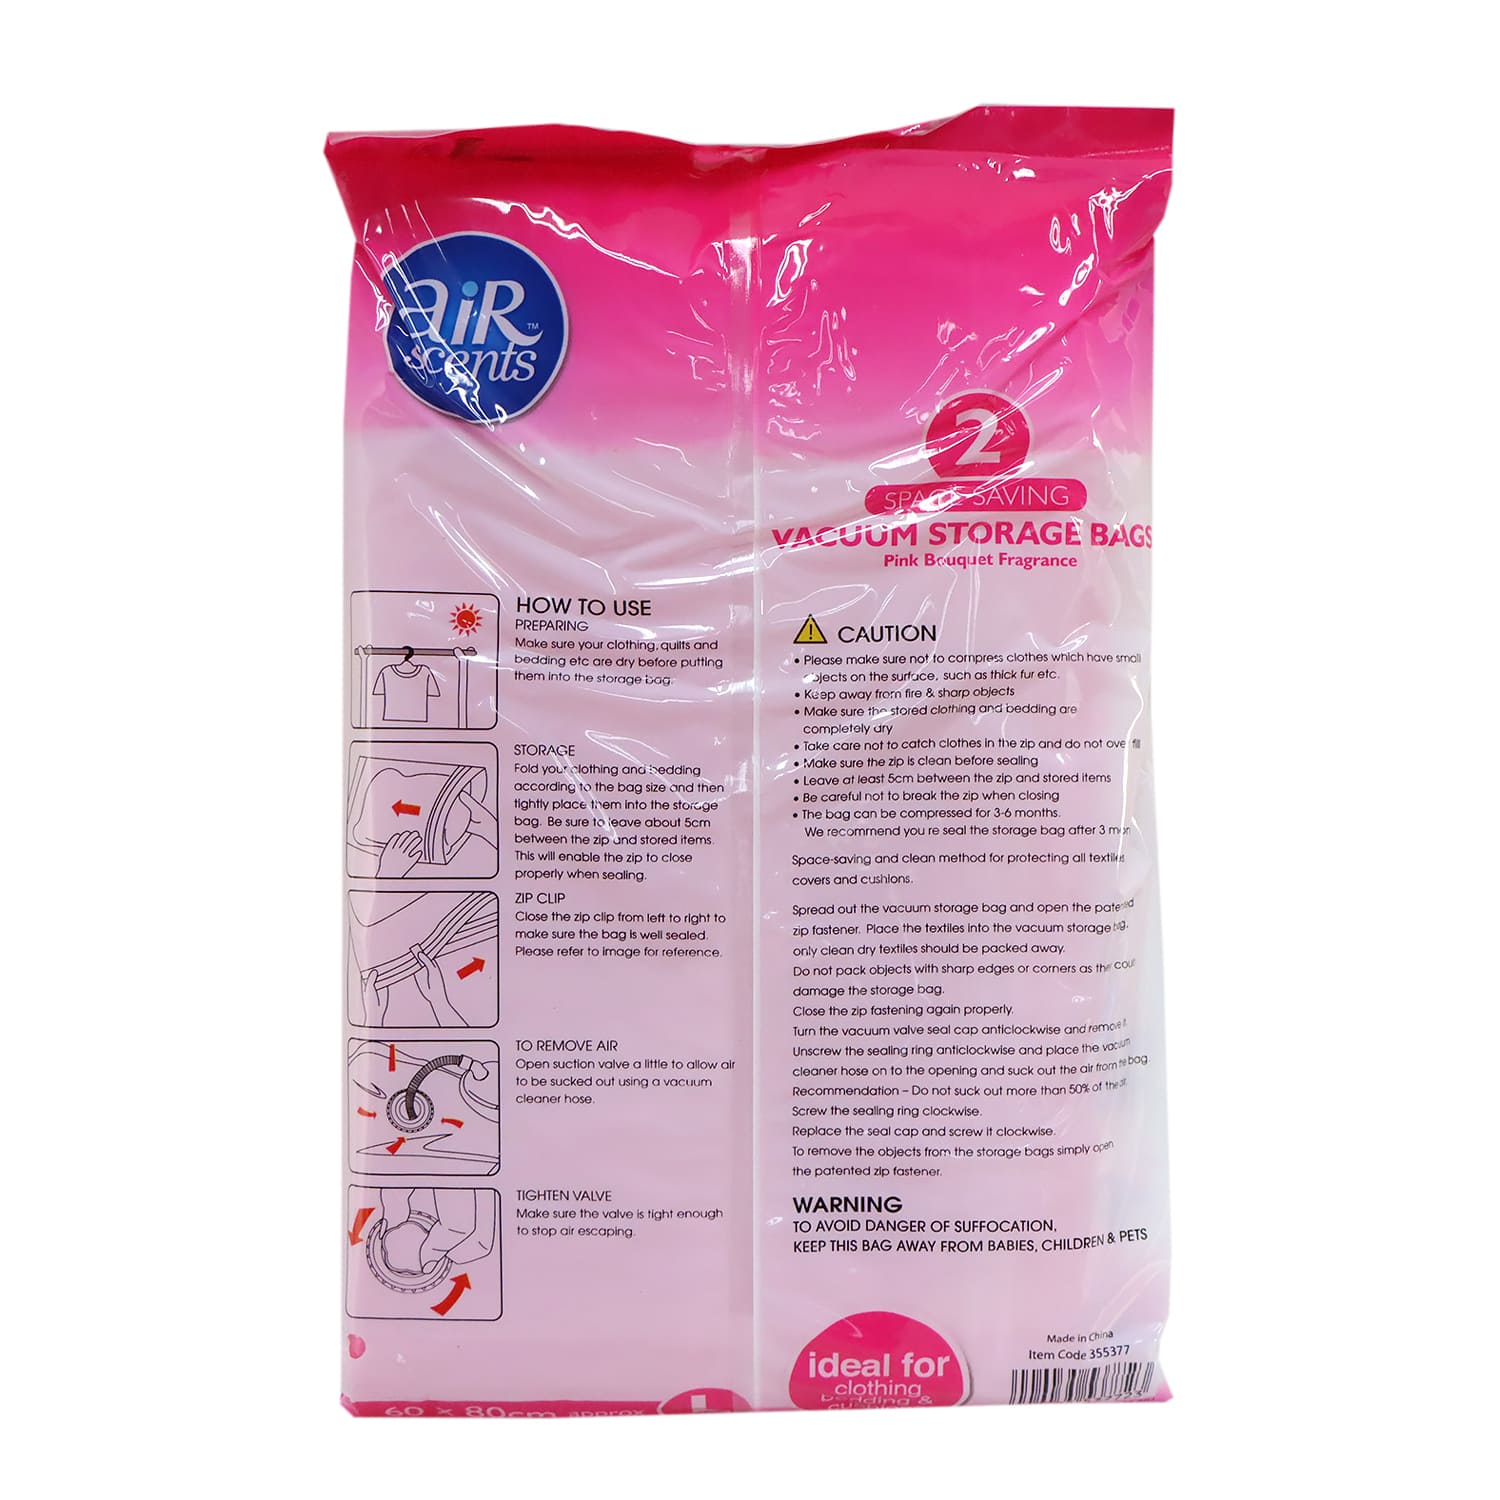 AirScents Vacuum Storage Bags 2pcs (Pink Bouquet)